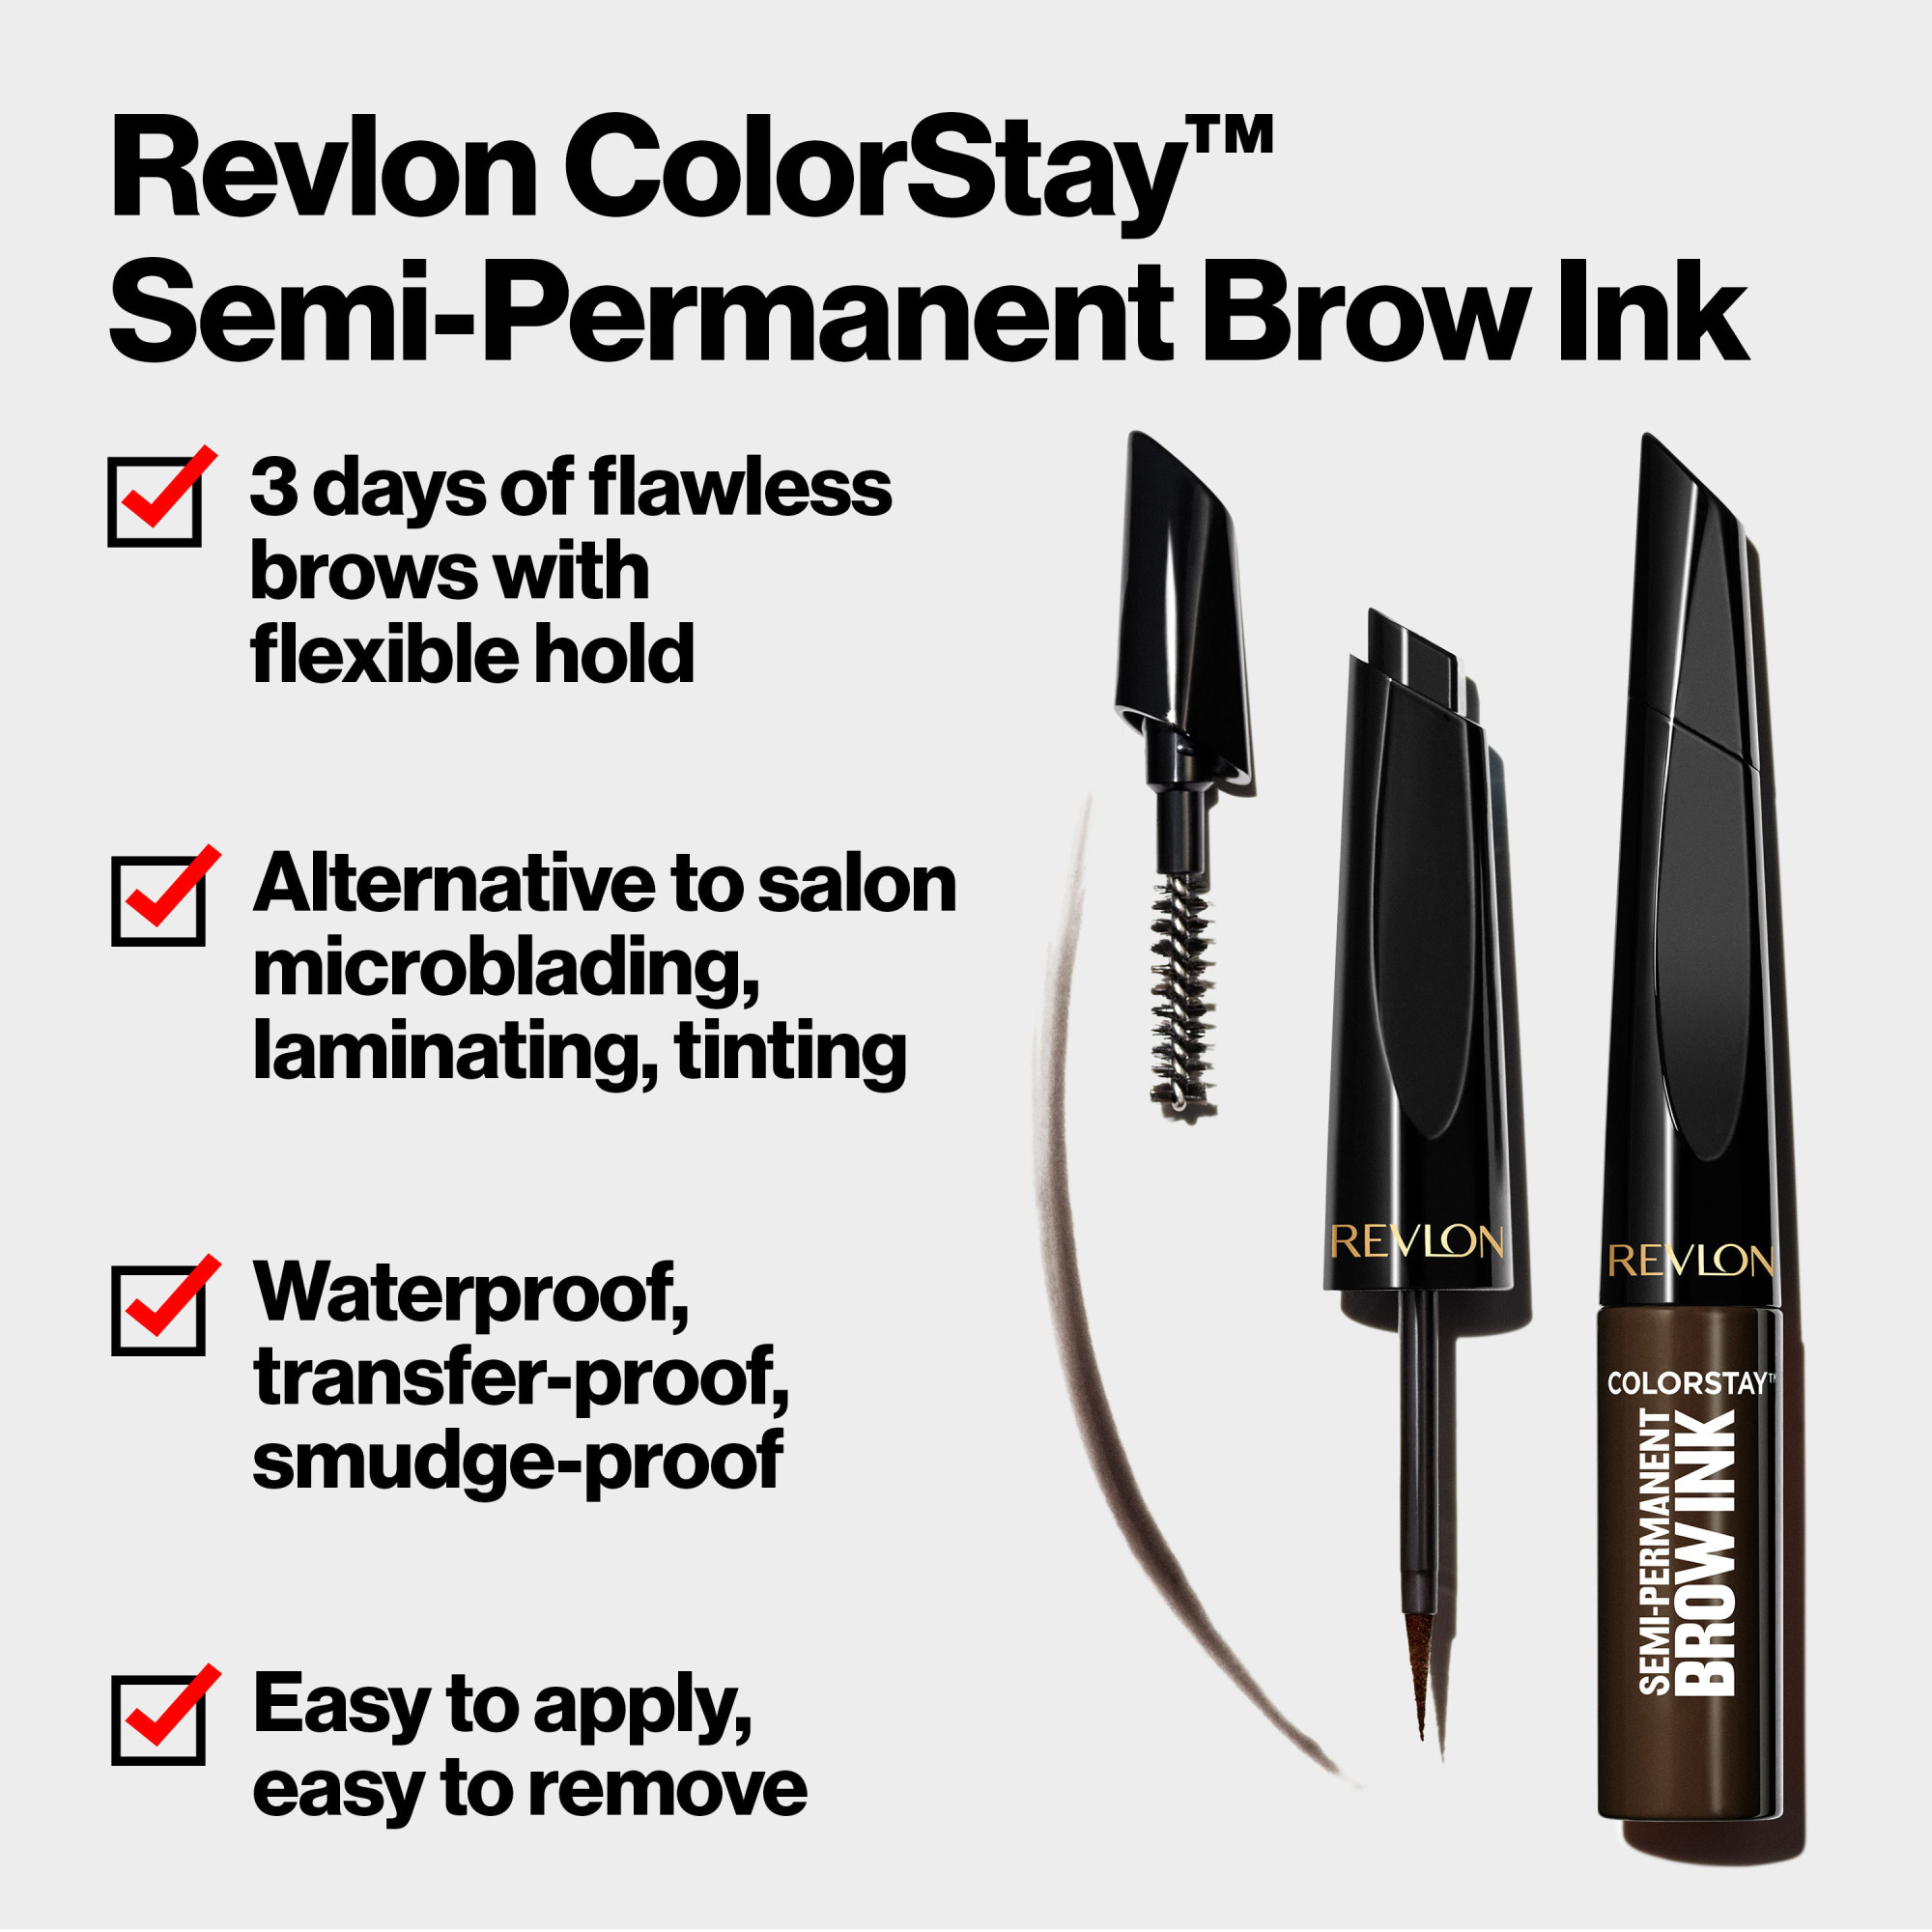 Revlon ColorStay Semi-Permanent Brow Ink Waterproof Eyebrow Enhancer Gel, 351 Warm Brown Ink, 0.09 fl oz. - image 4 of 10